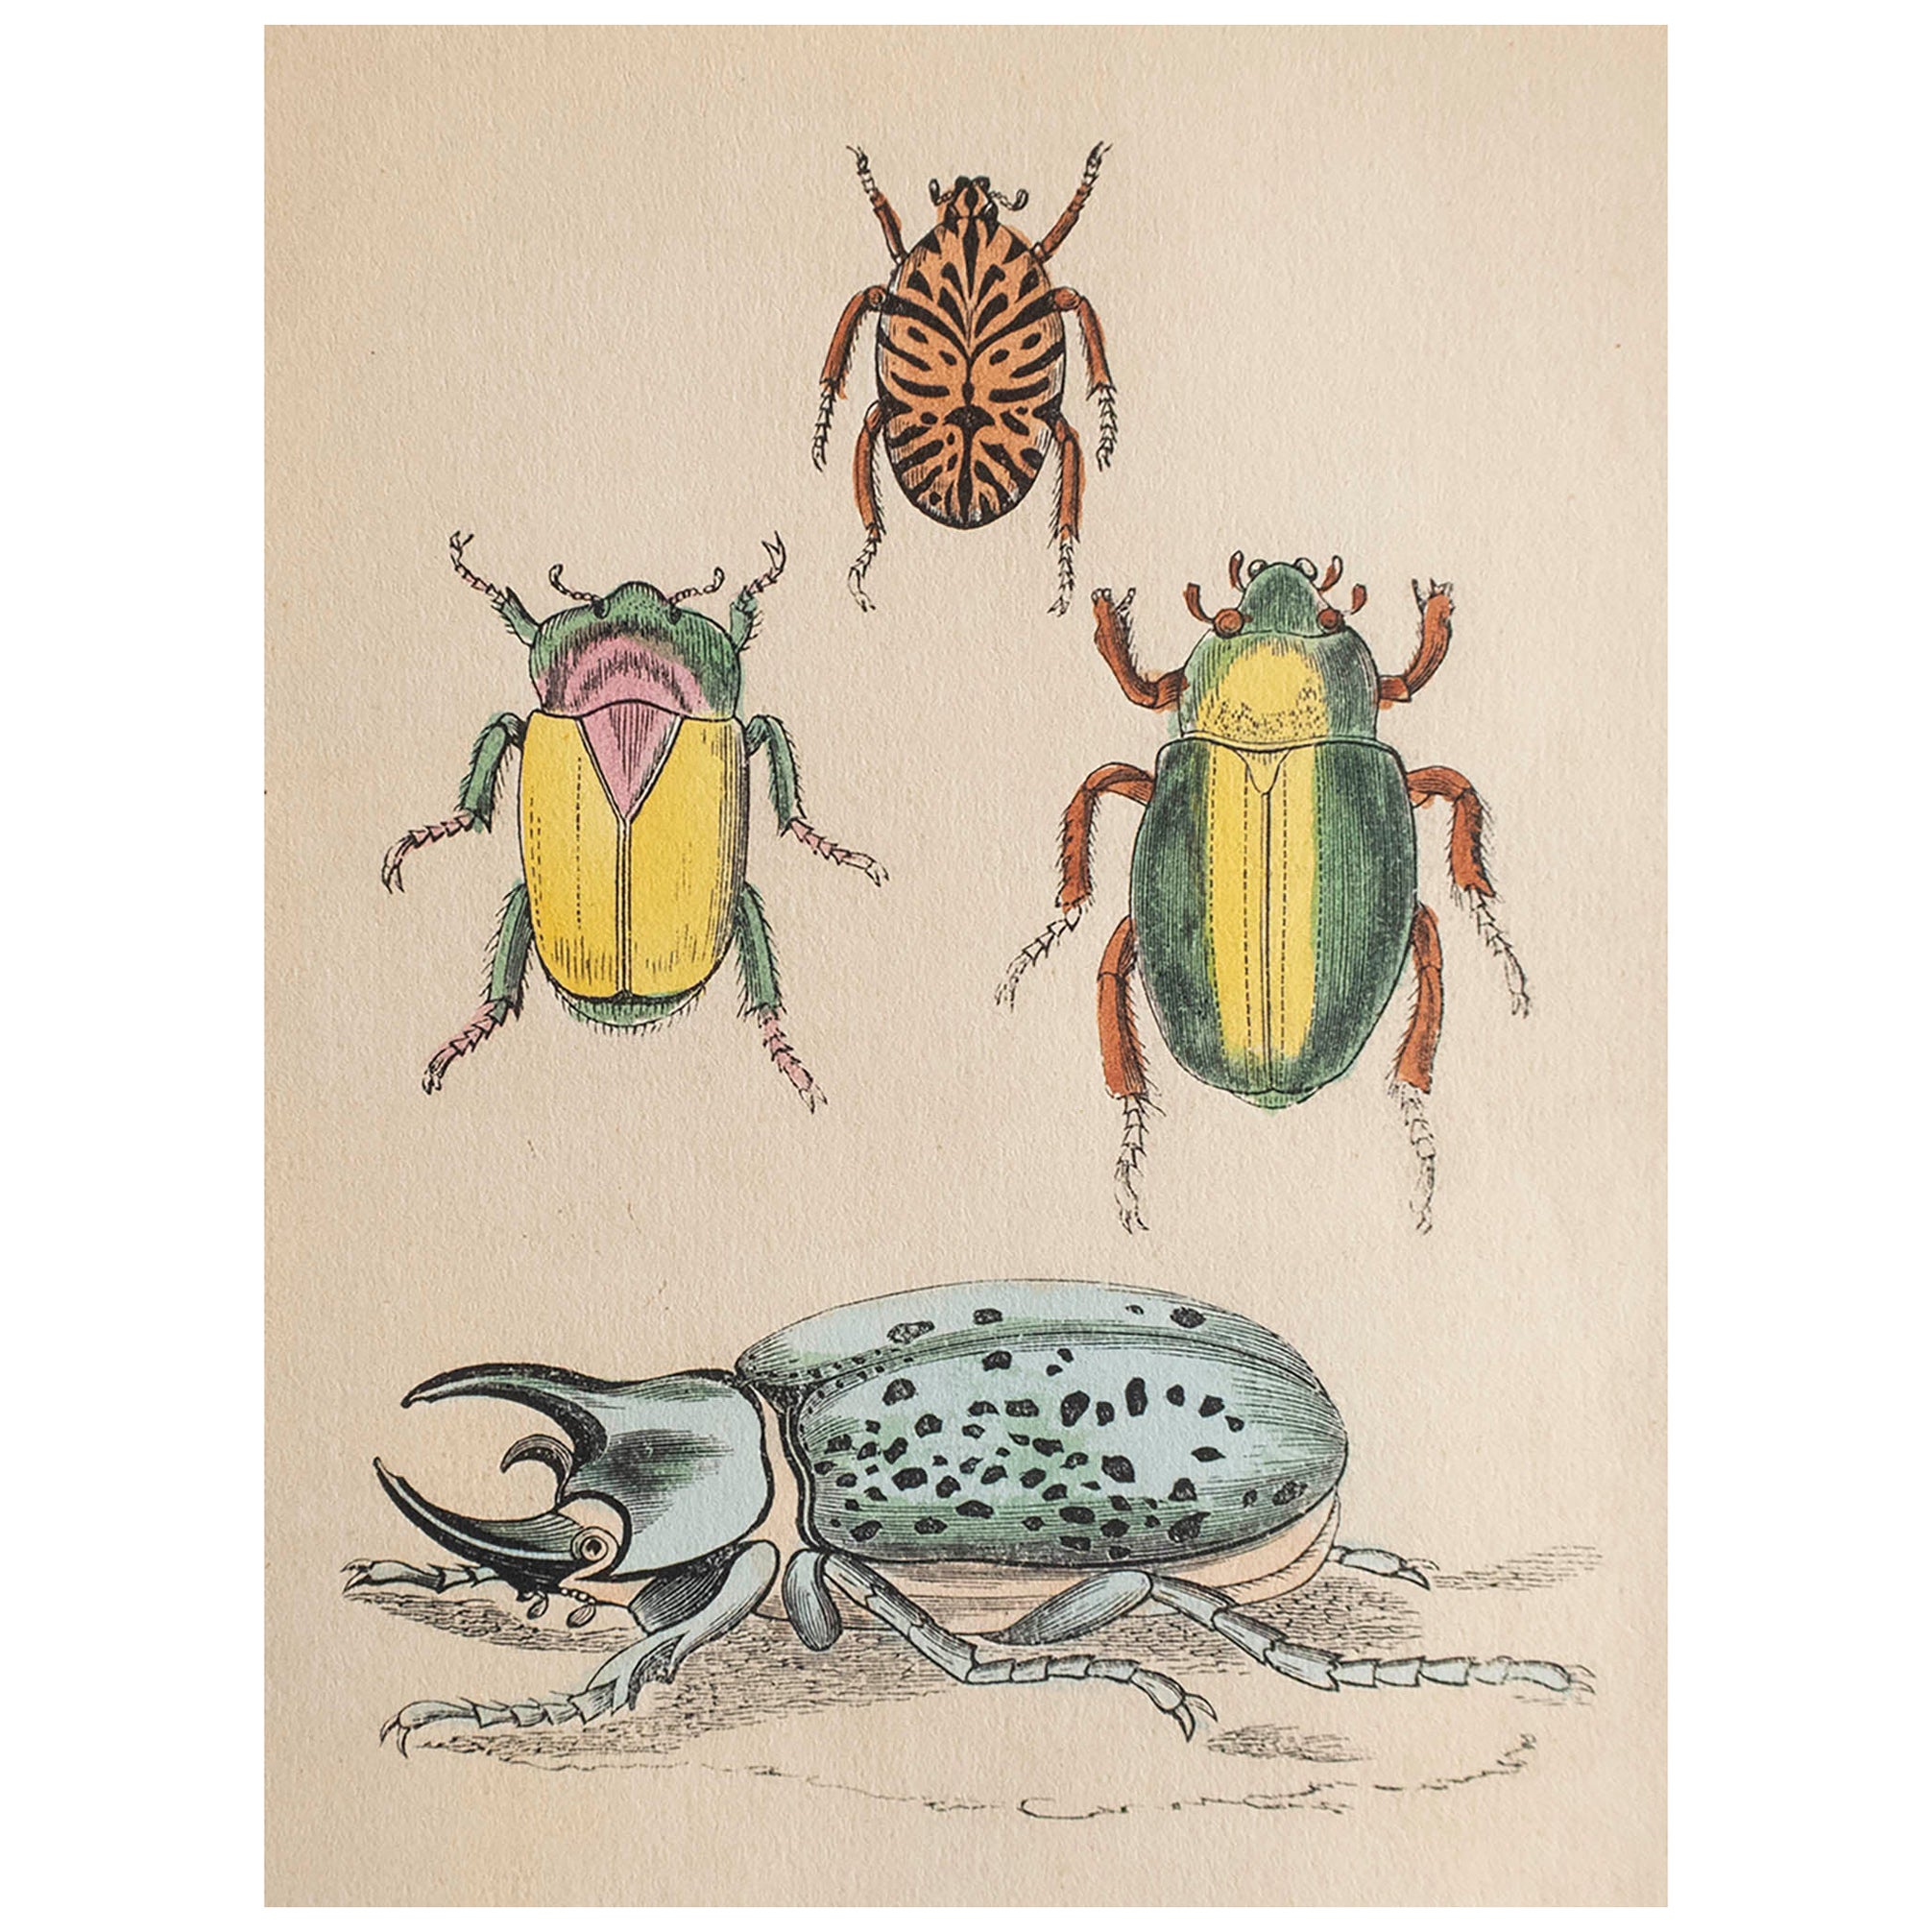  Gravure ancienne originale de coléoptères, vers 1850